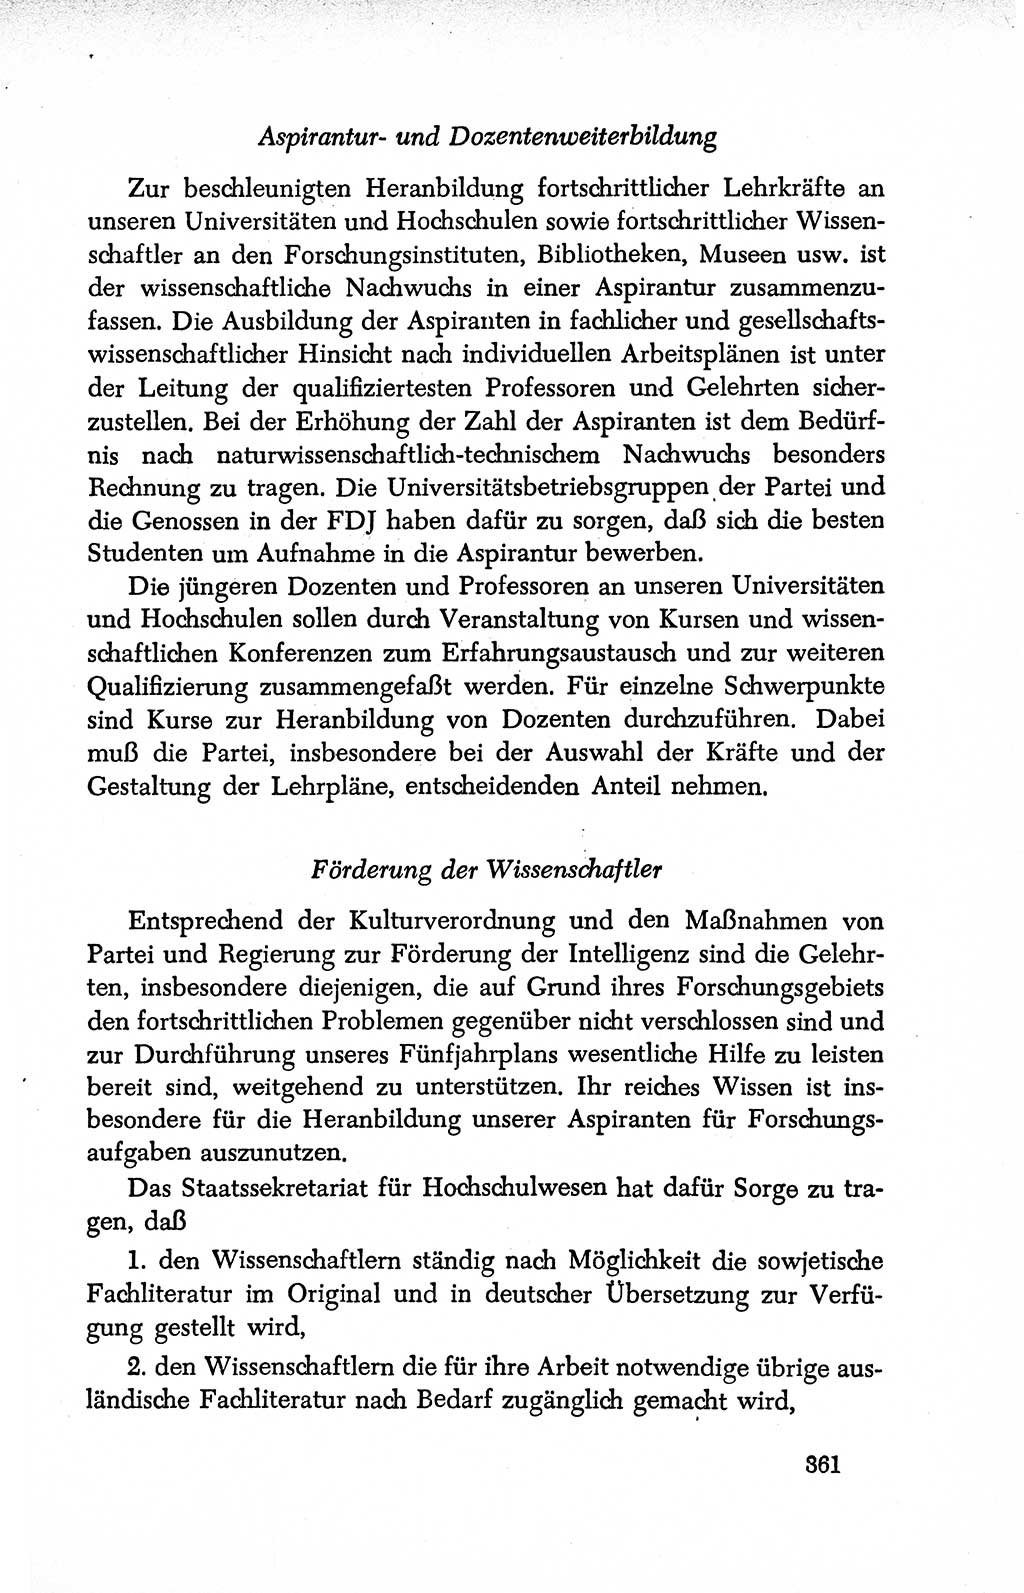 Dokumente der Sozialistischen Einheitspartei Deutschlands (SED) [Deutsche Demokratische Republik (DDR)] 1950-1952, Seite 361 (Dok. SED DDR 1950-1952, S. 361)